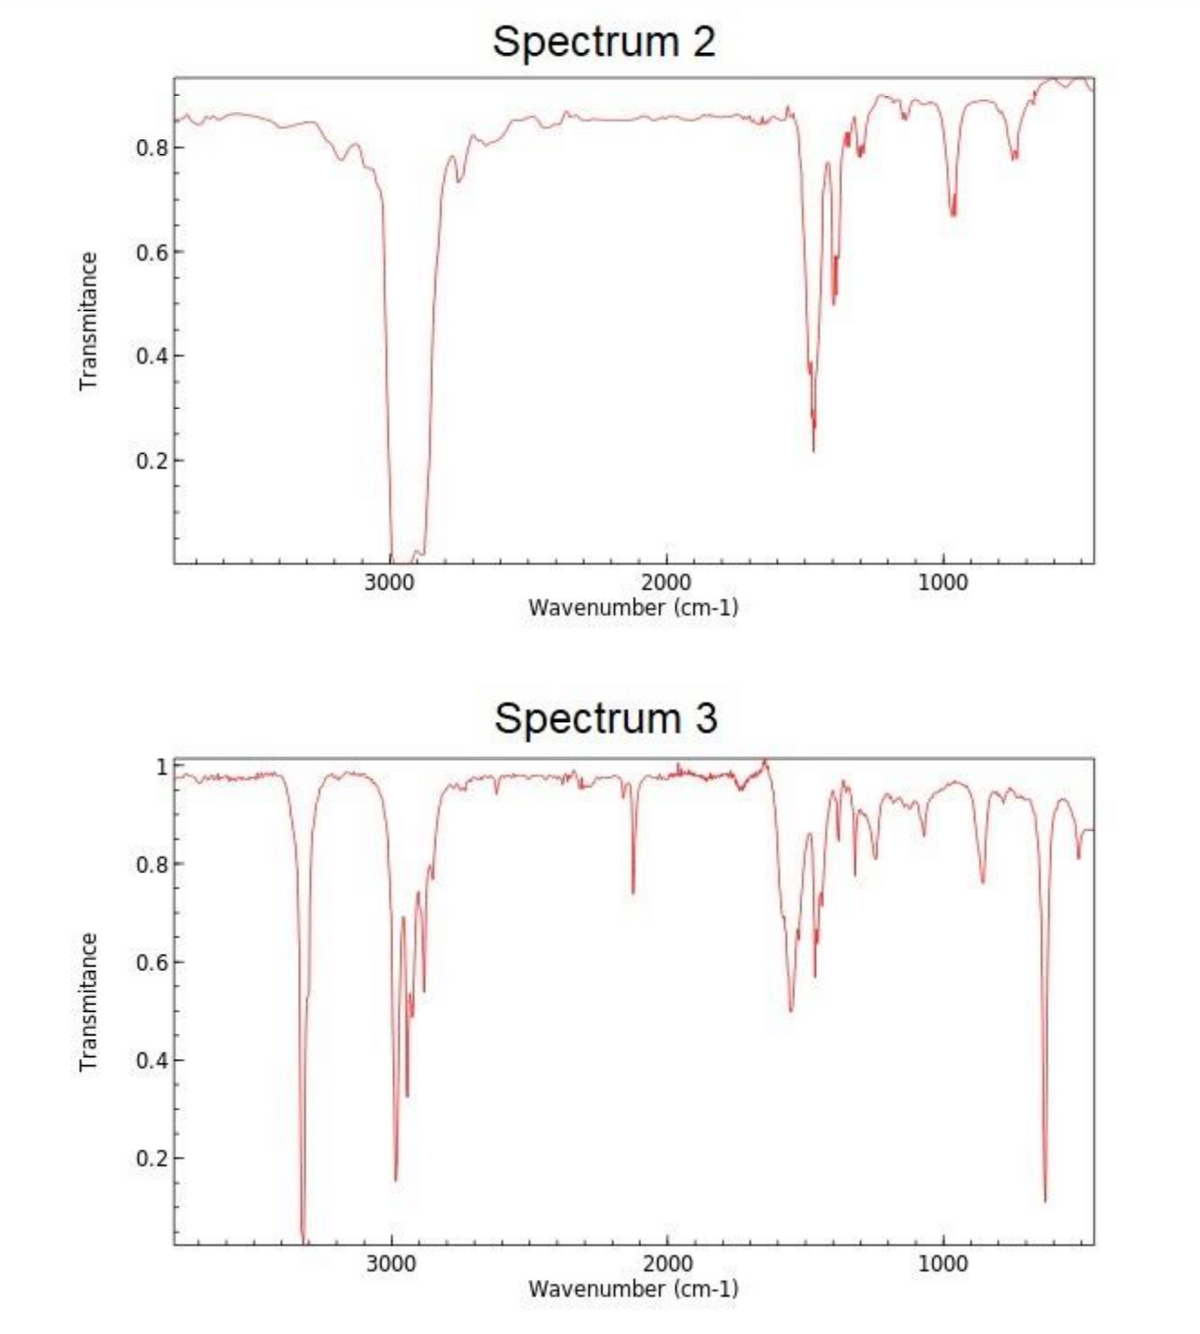 Spectrum 2
0.8
0.6
0.4
0.2
3000
2000
Wavenumber (cm-1)
1000
Spectrum 3
1
0.8
0.6
0.4
0.2-
3000
2000
1000
Wavenumber (cm-1)
Transmitance
Transmitance
